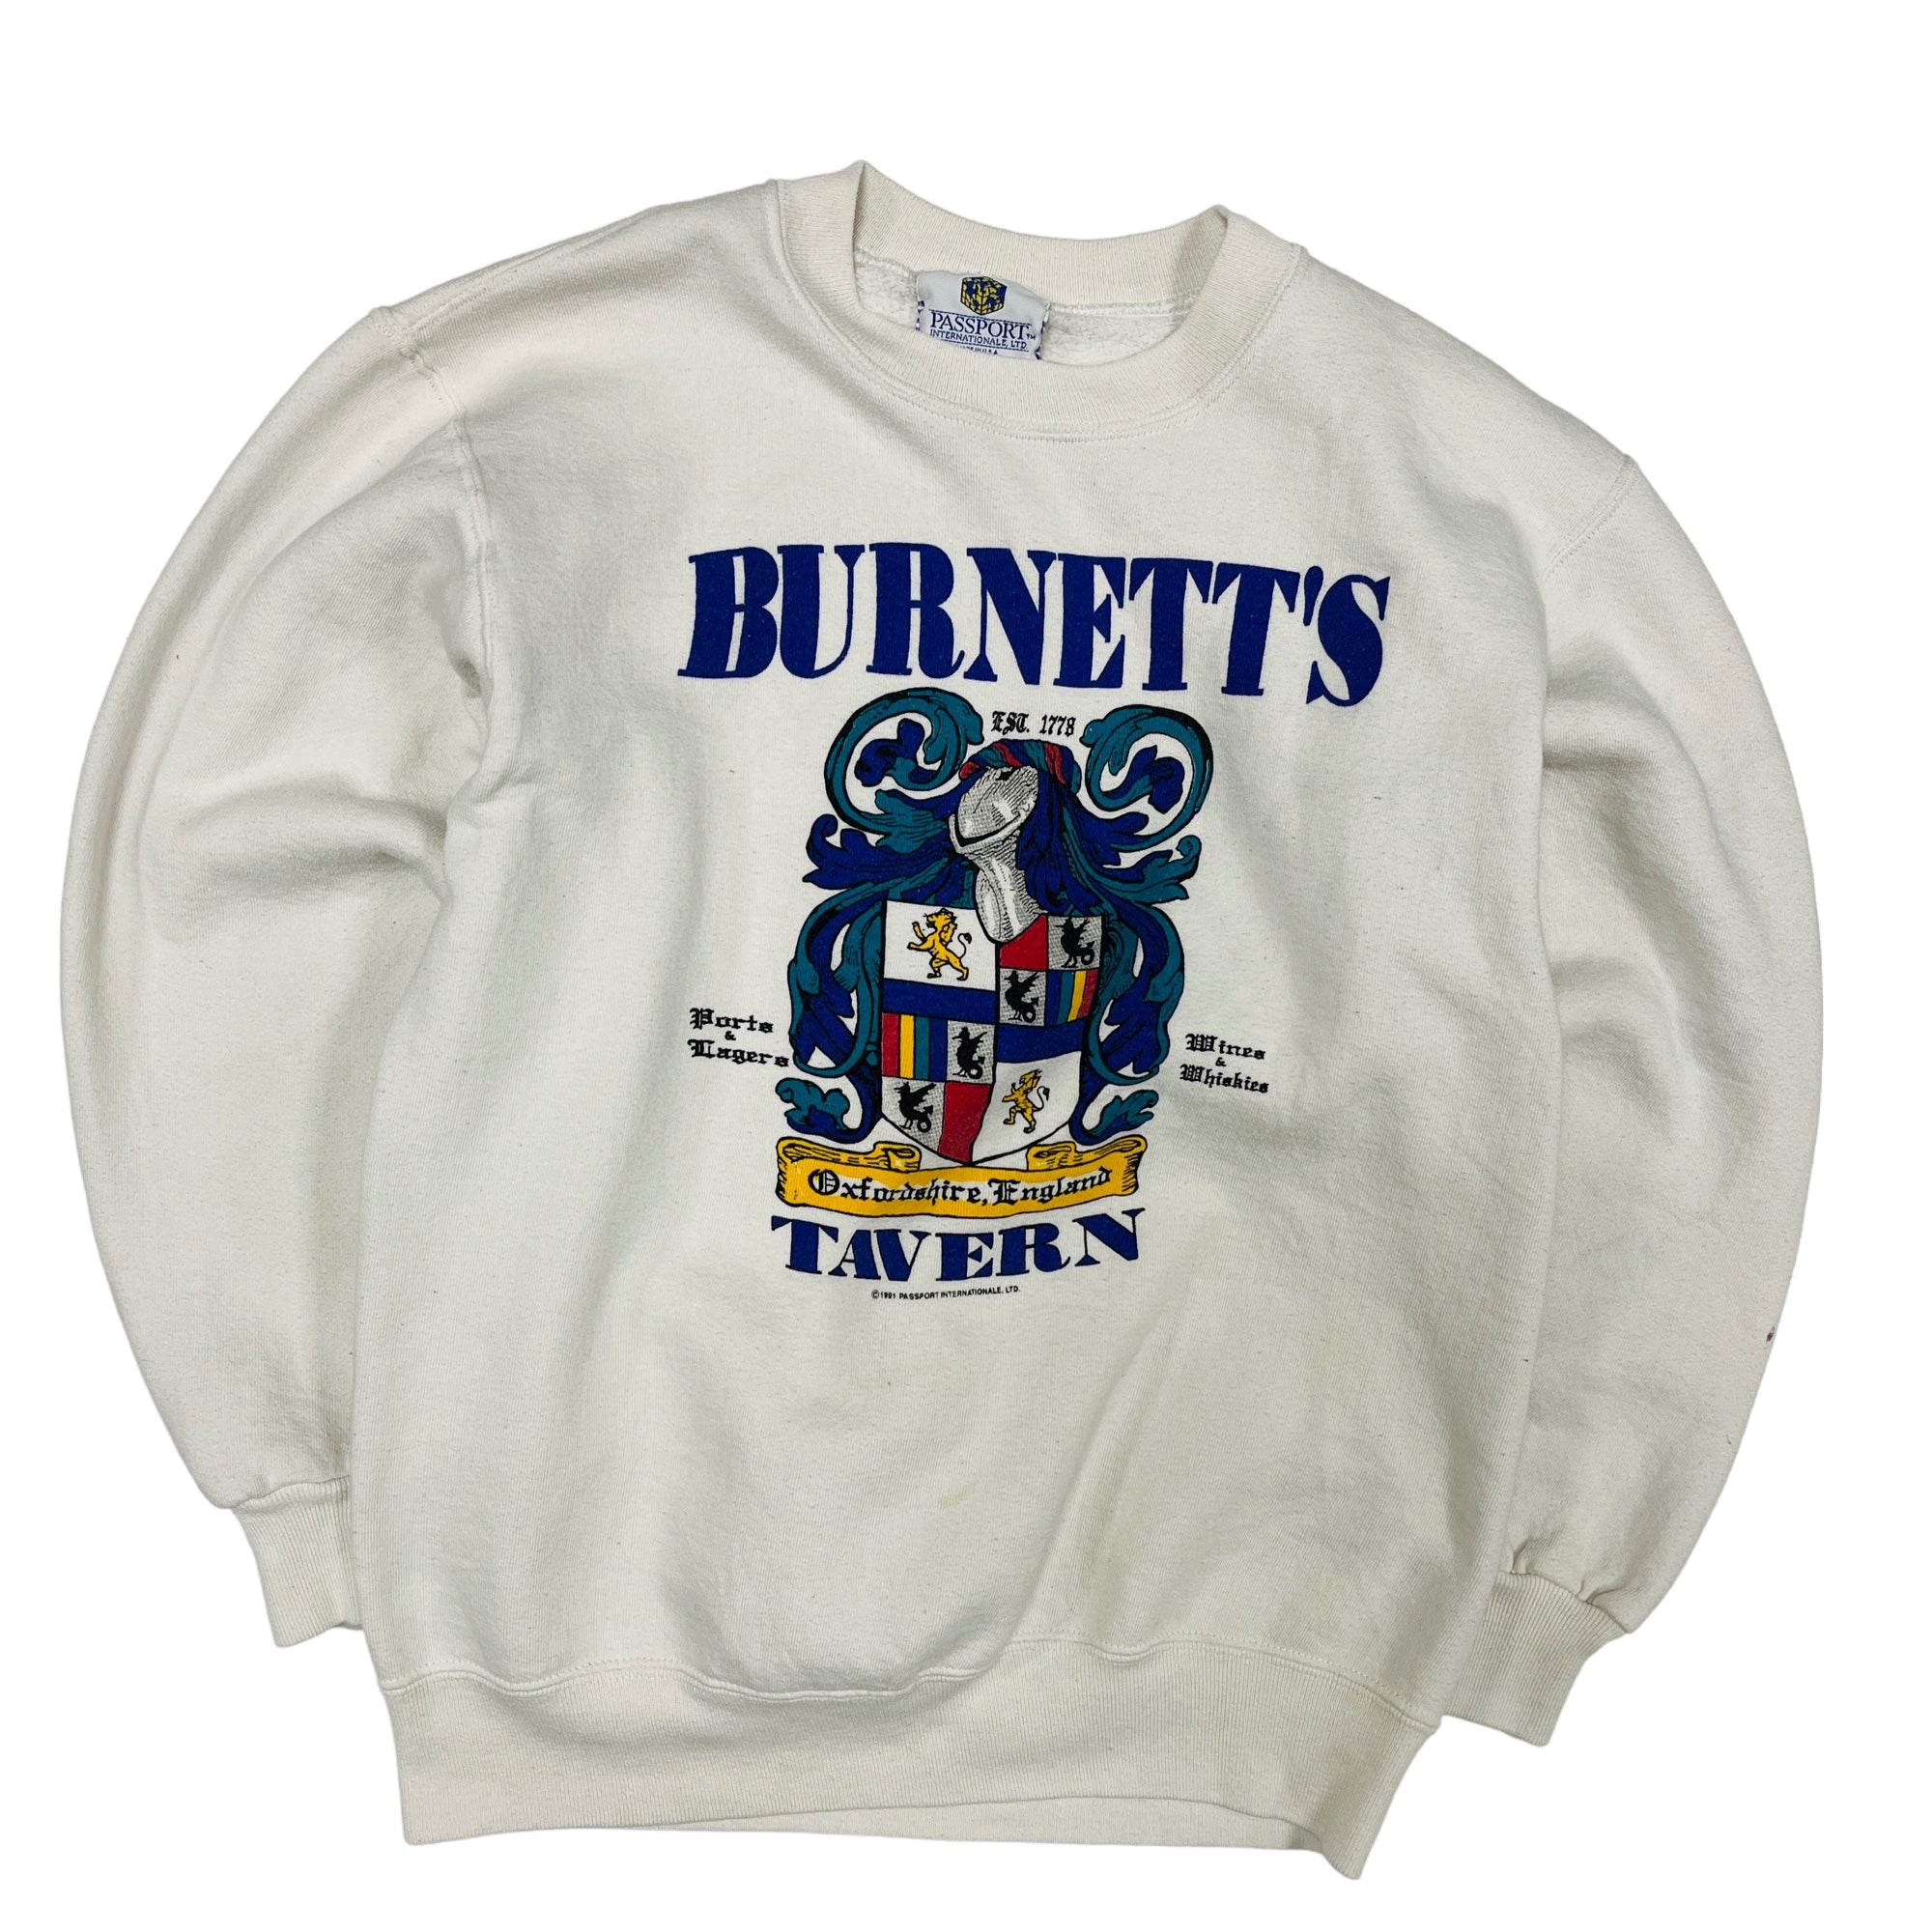 1991 Burnetts Tavern Graphic Sweatshirt - Medium